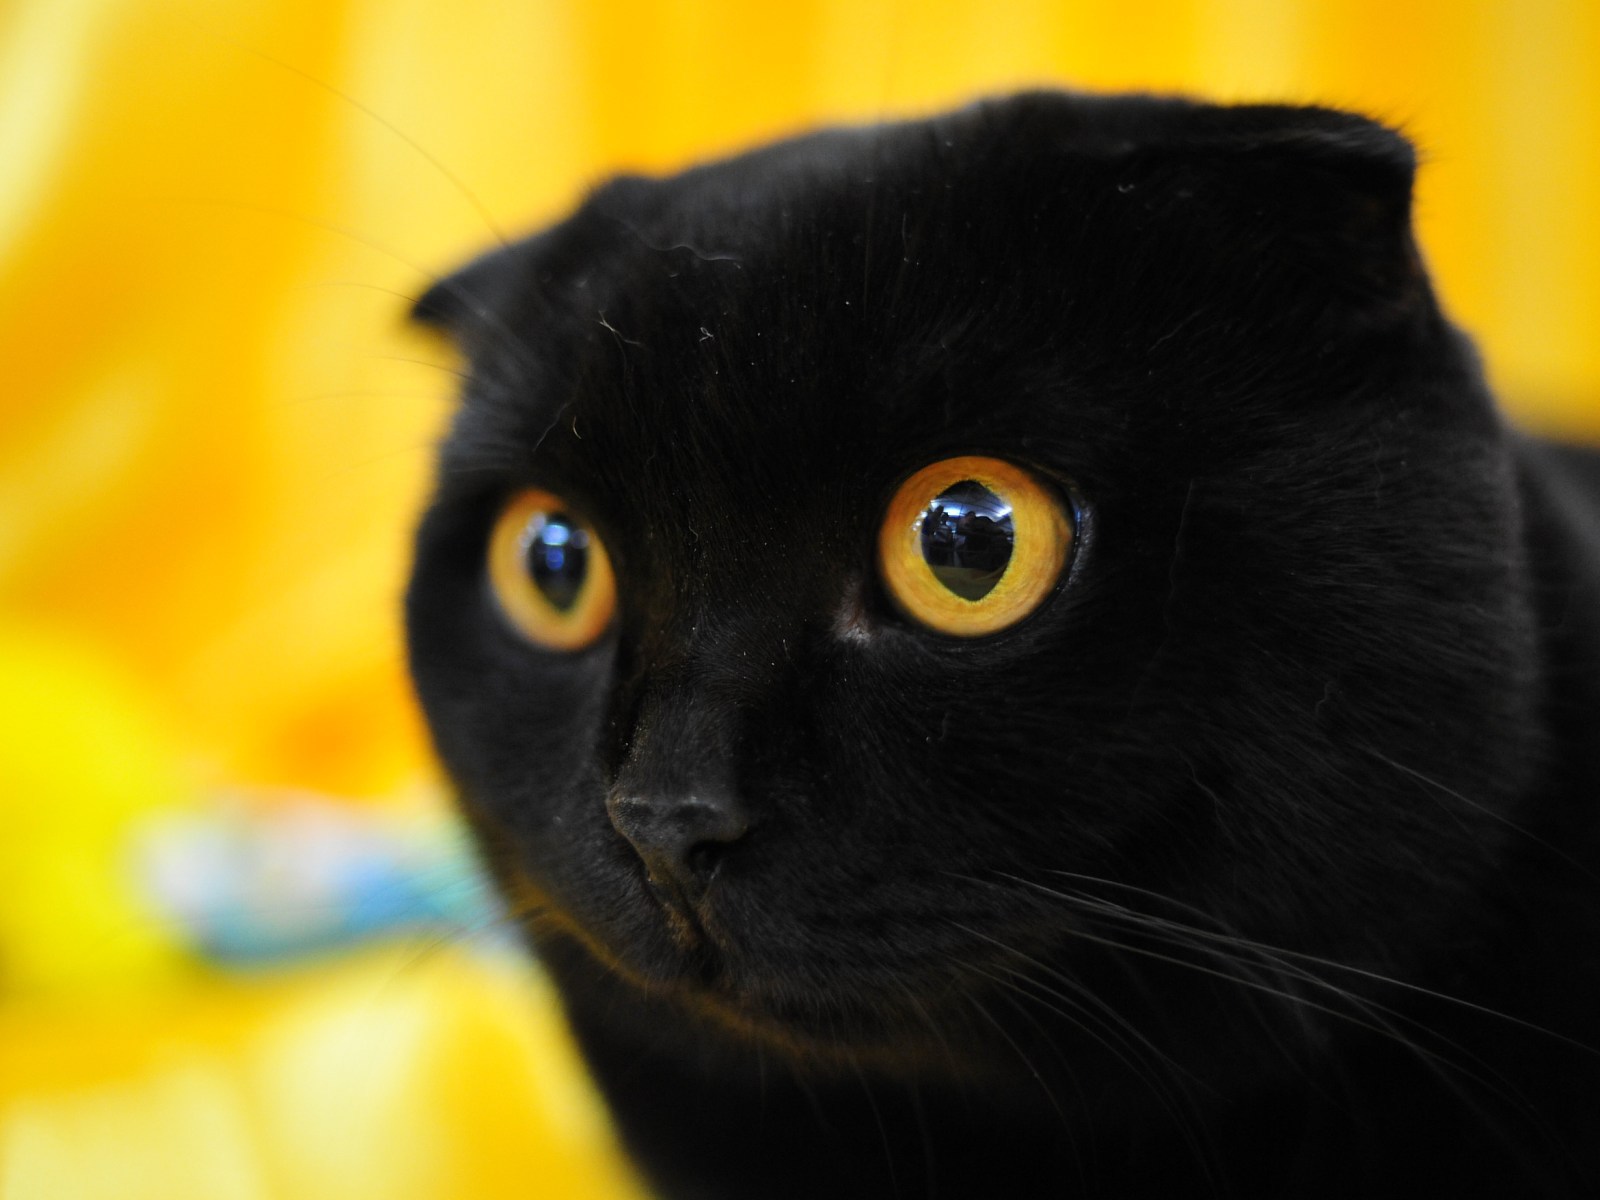 Порода черной кошки с желтыми глазами. Шотландская вислоухая кошка черная. Шотландец вислоухий черный. Скоттиш-фолд Шотландская вислоухая кошка черная. Шотландский скоттиш фолд черный.